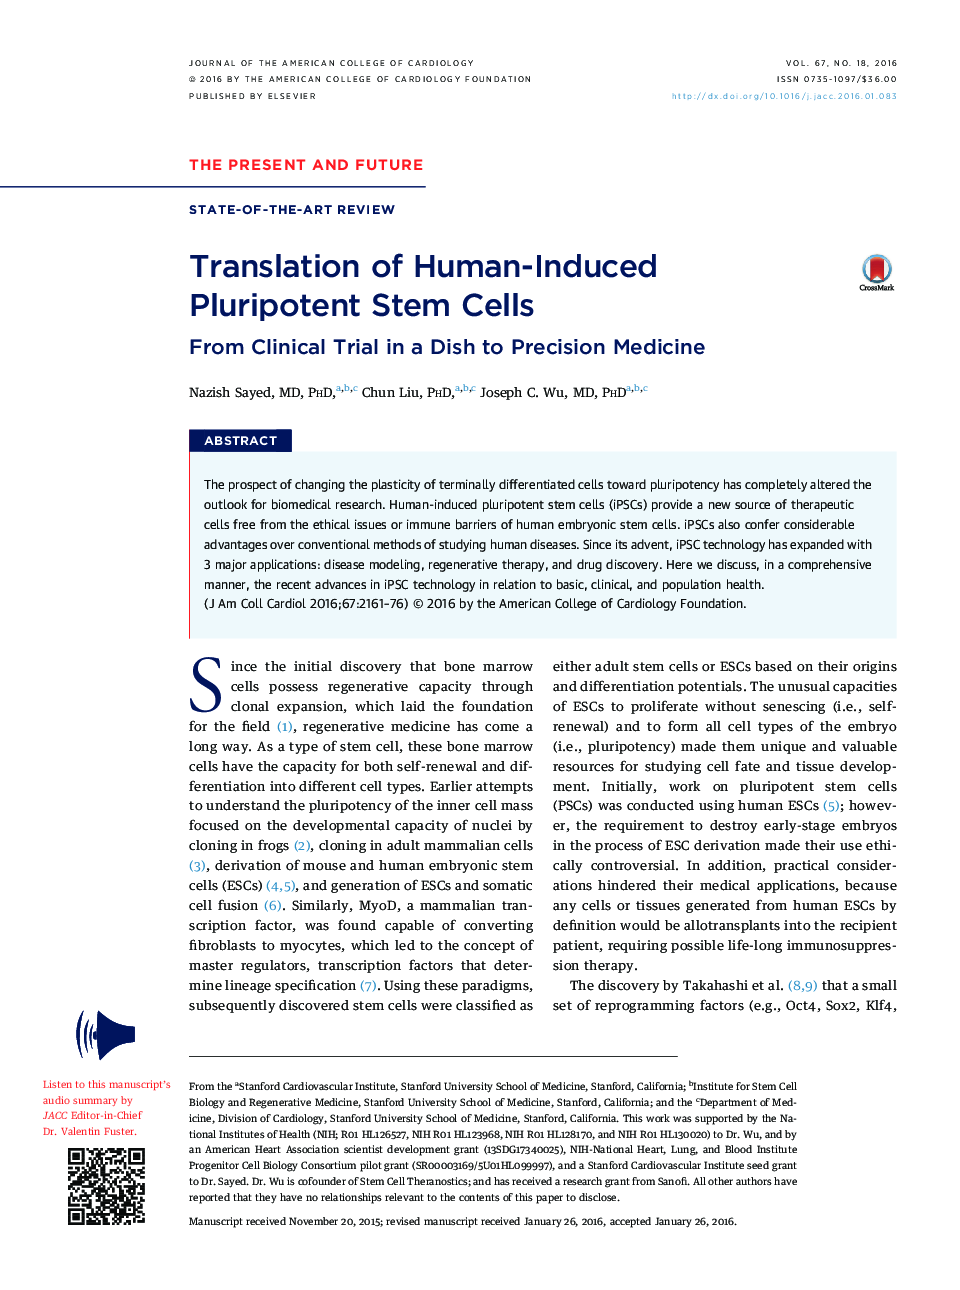 ترجمه سلول های بنیادی انسدادی انسانی: از آزمایش بالینی در یک ظرف به دقت پزشکی 